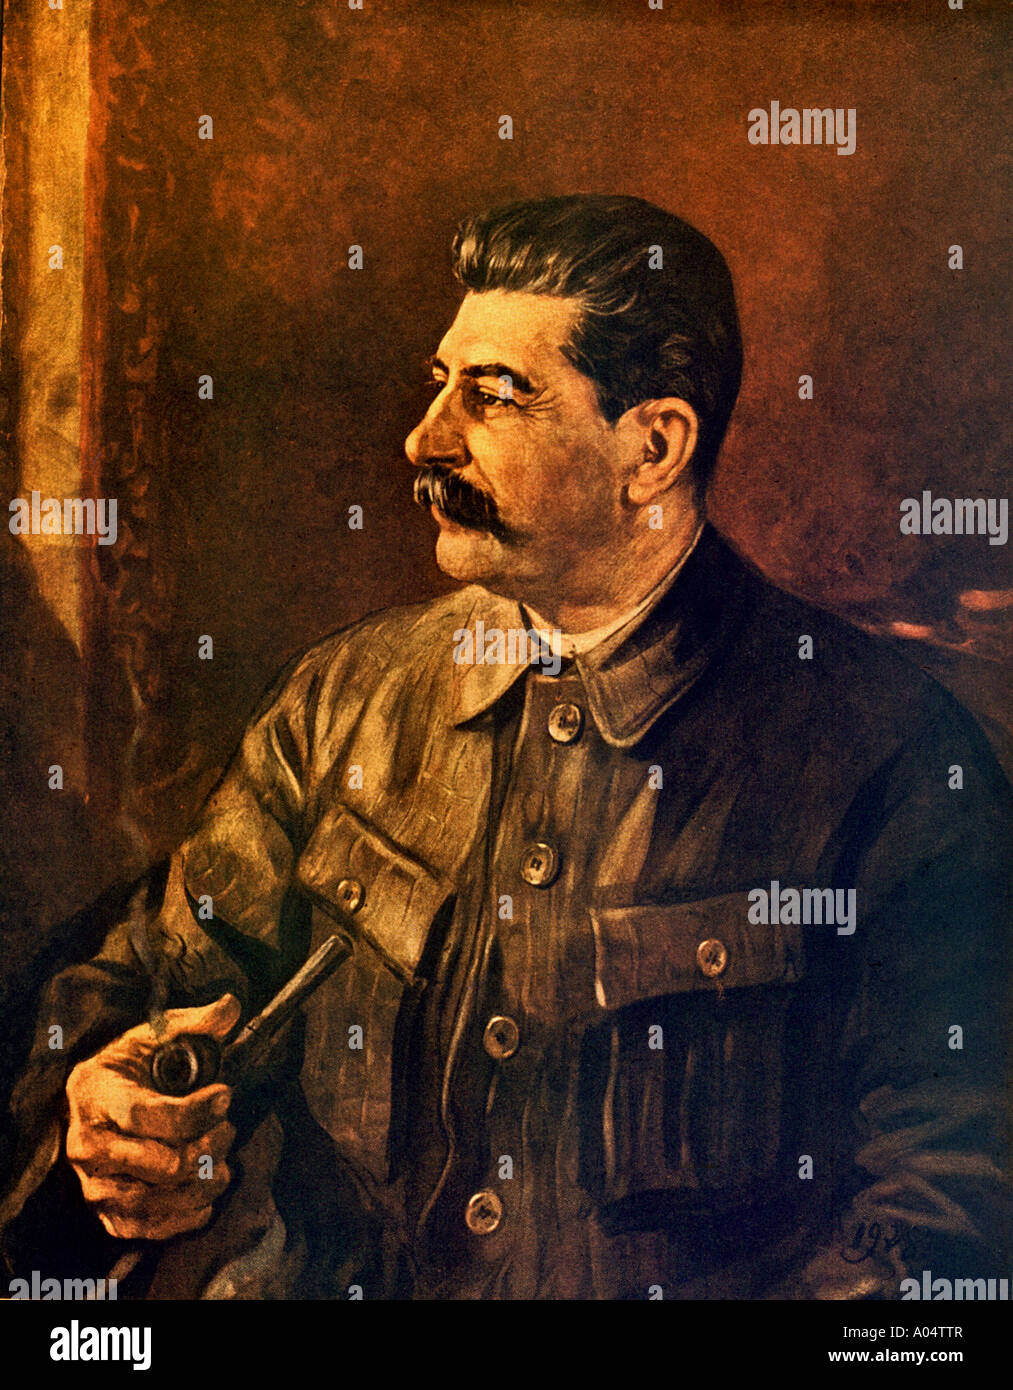 Révolutionnaire soviétique Joseph Staline et leader dans une peinture 1944 Banque D'Images